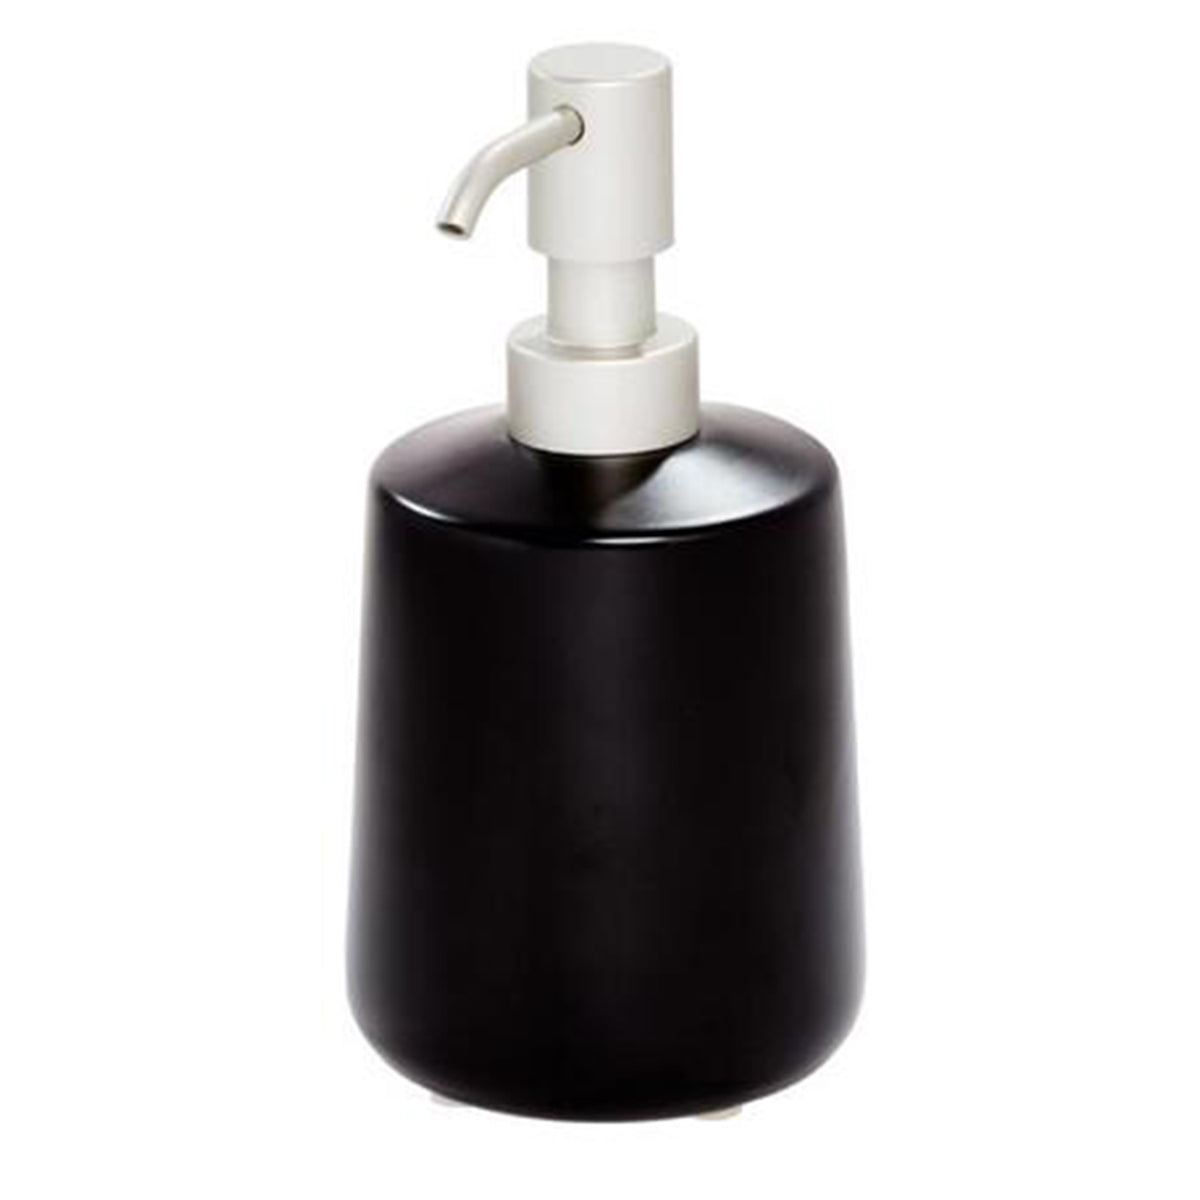 Liquid soap dispenser, Black